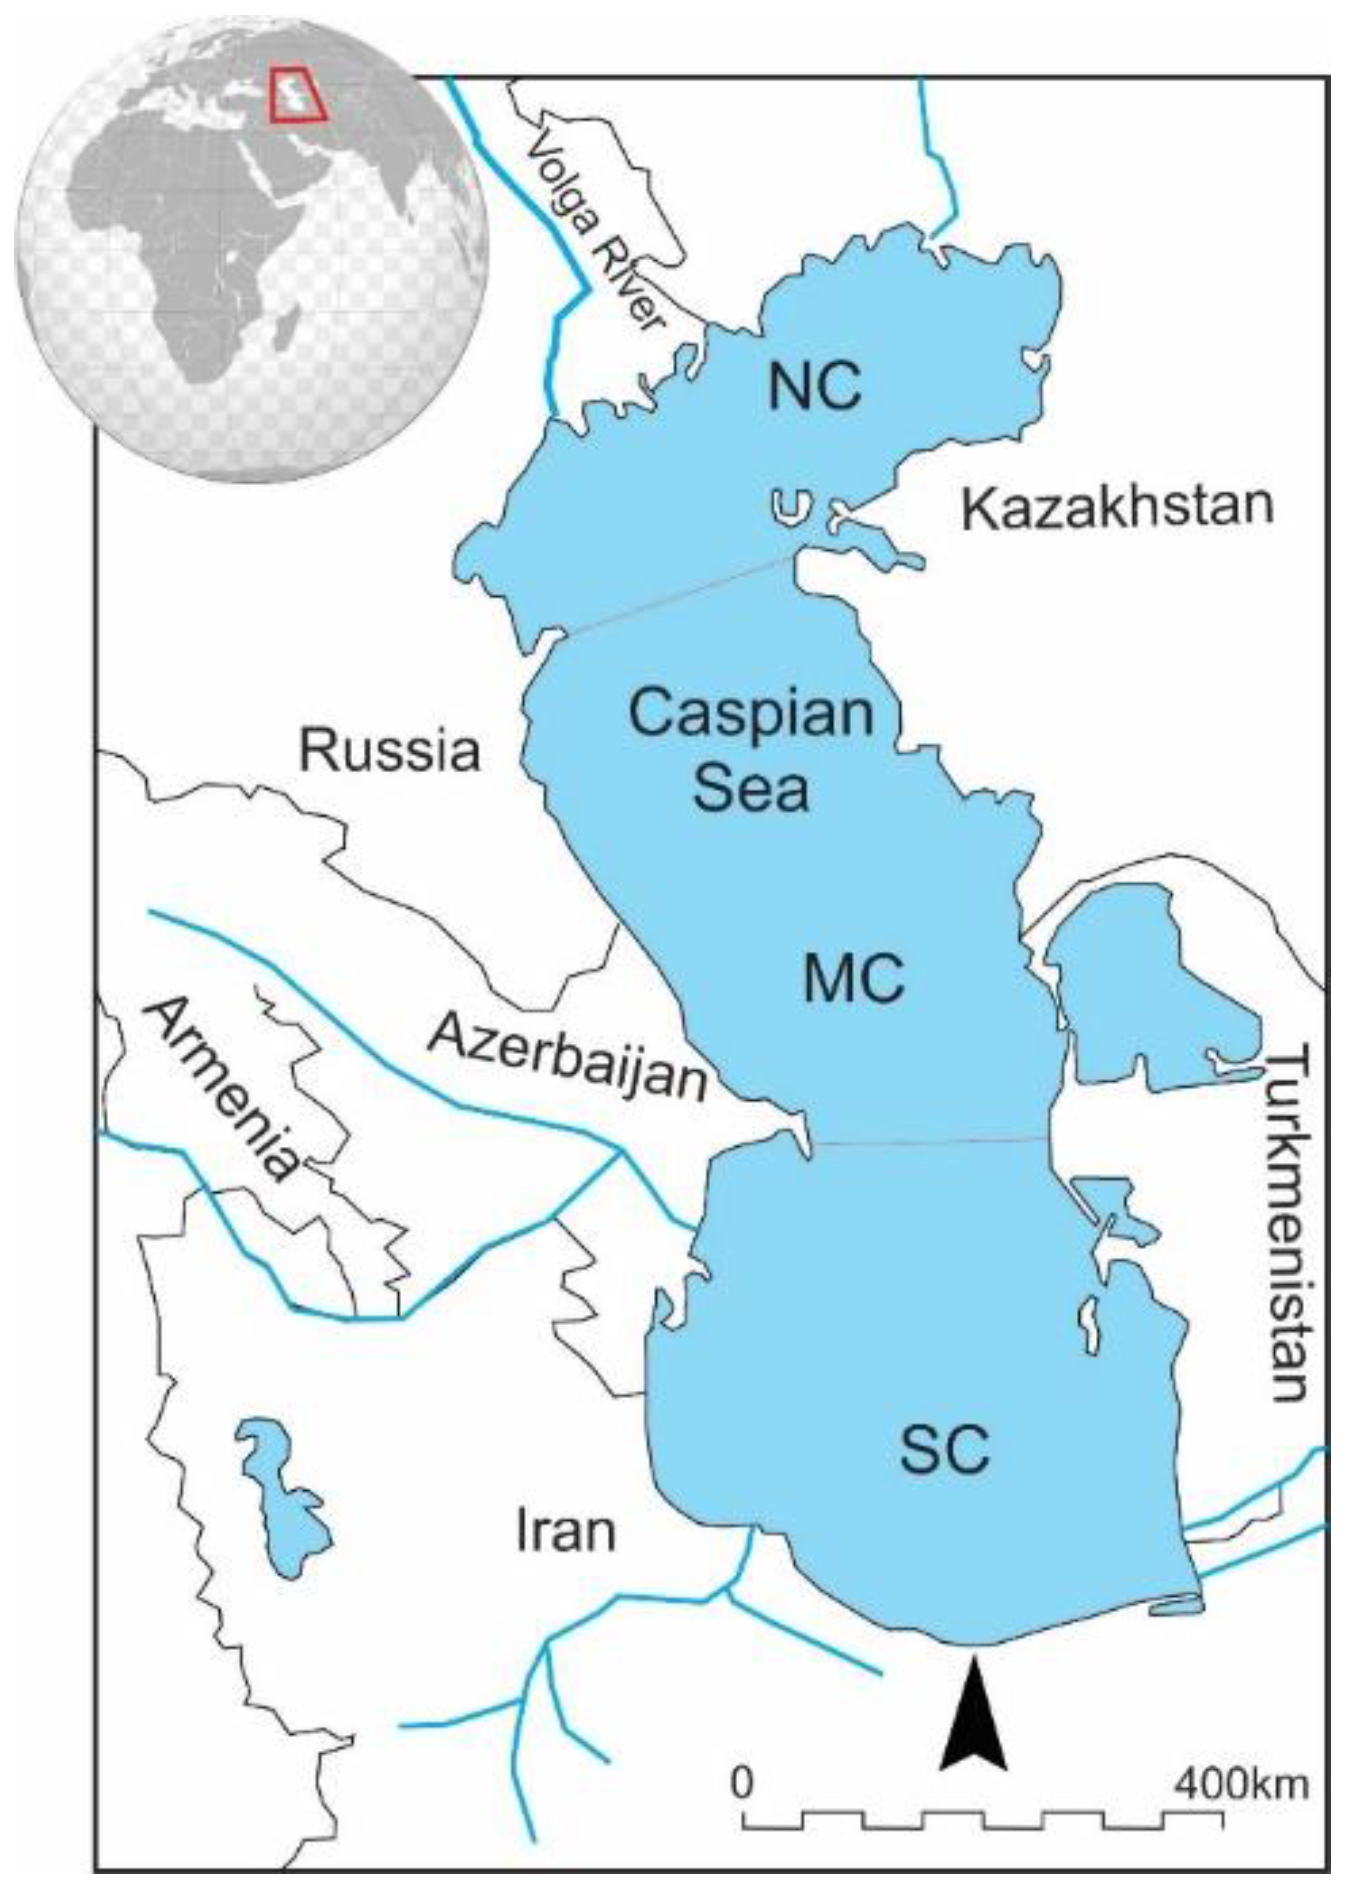 LV Logistics - Caspian